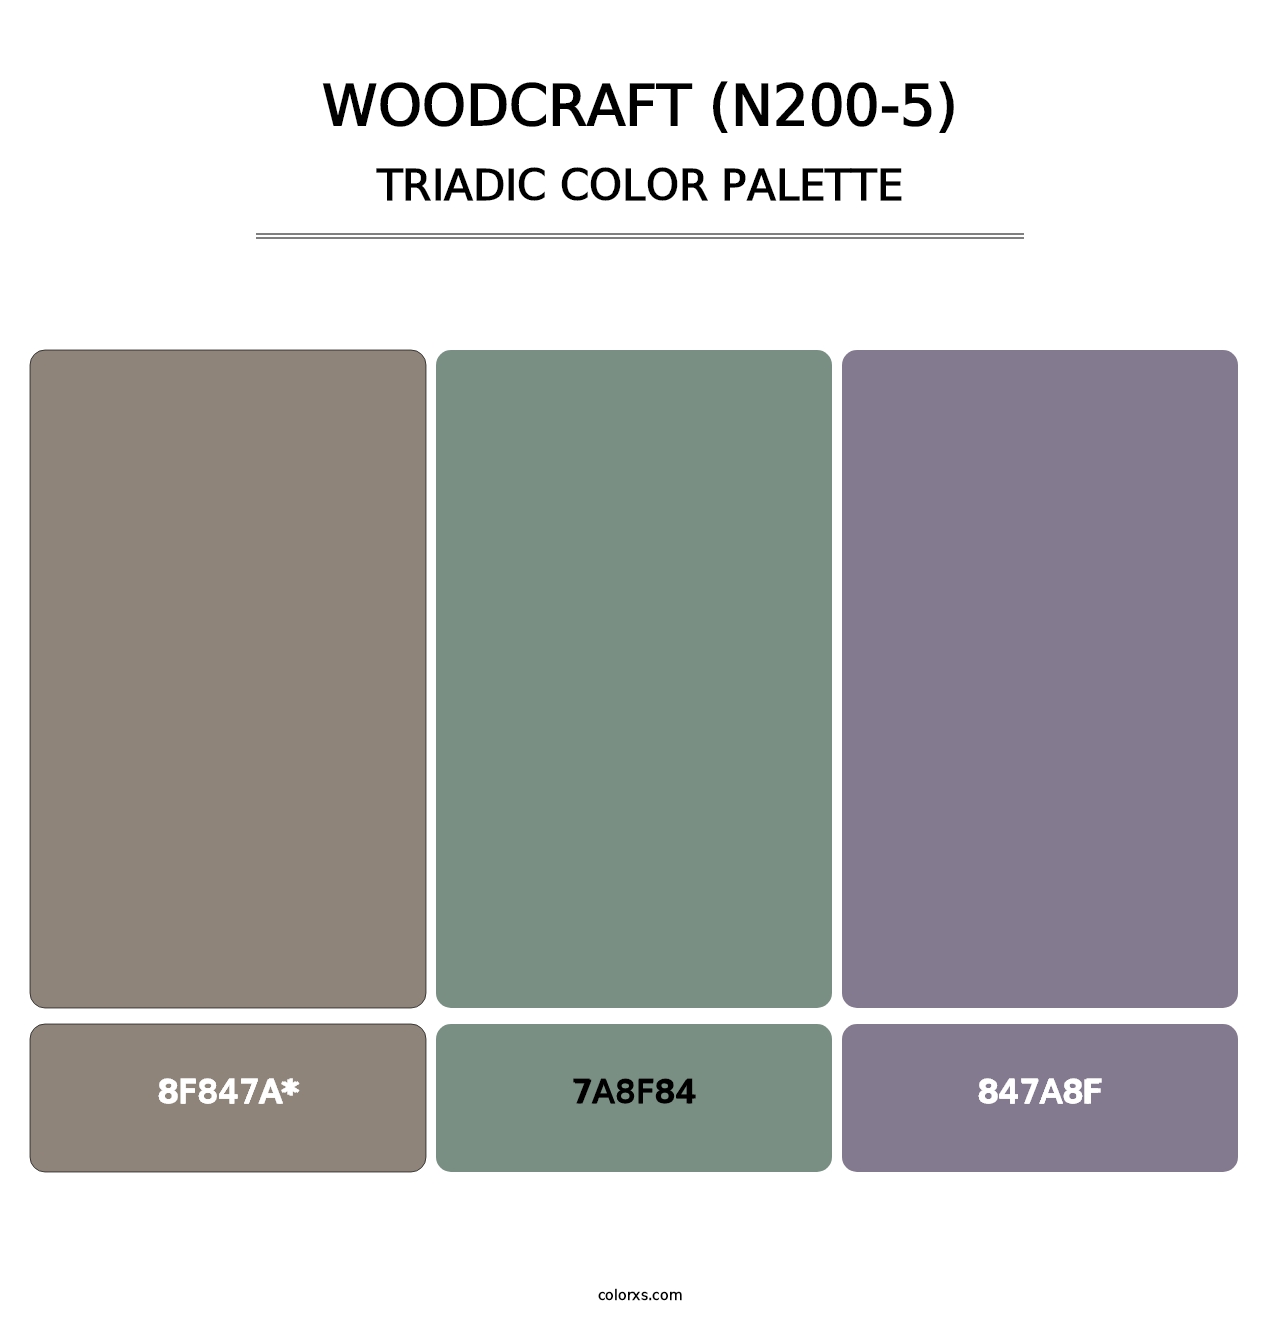 Woodcraft (N200-5) - Triadic Color Palette